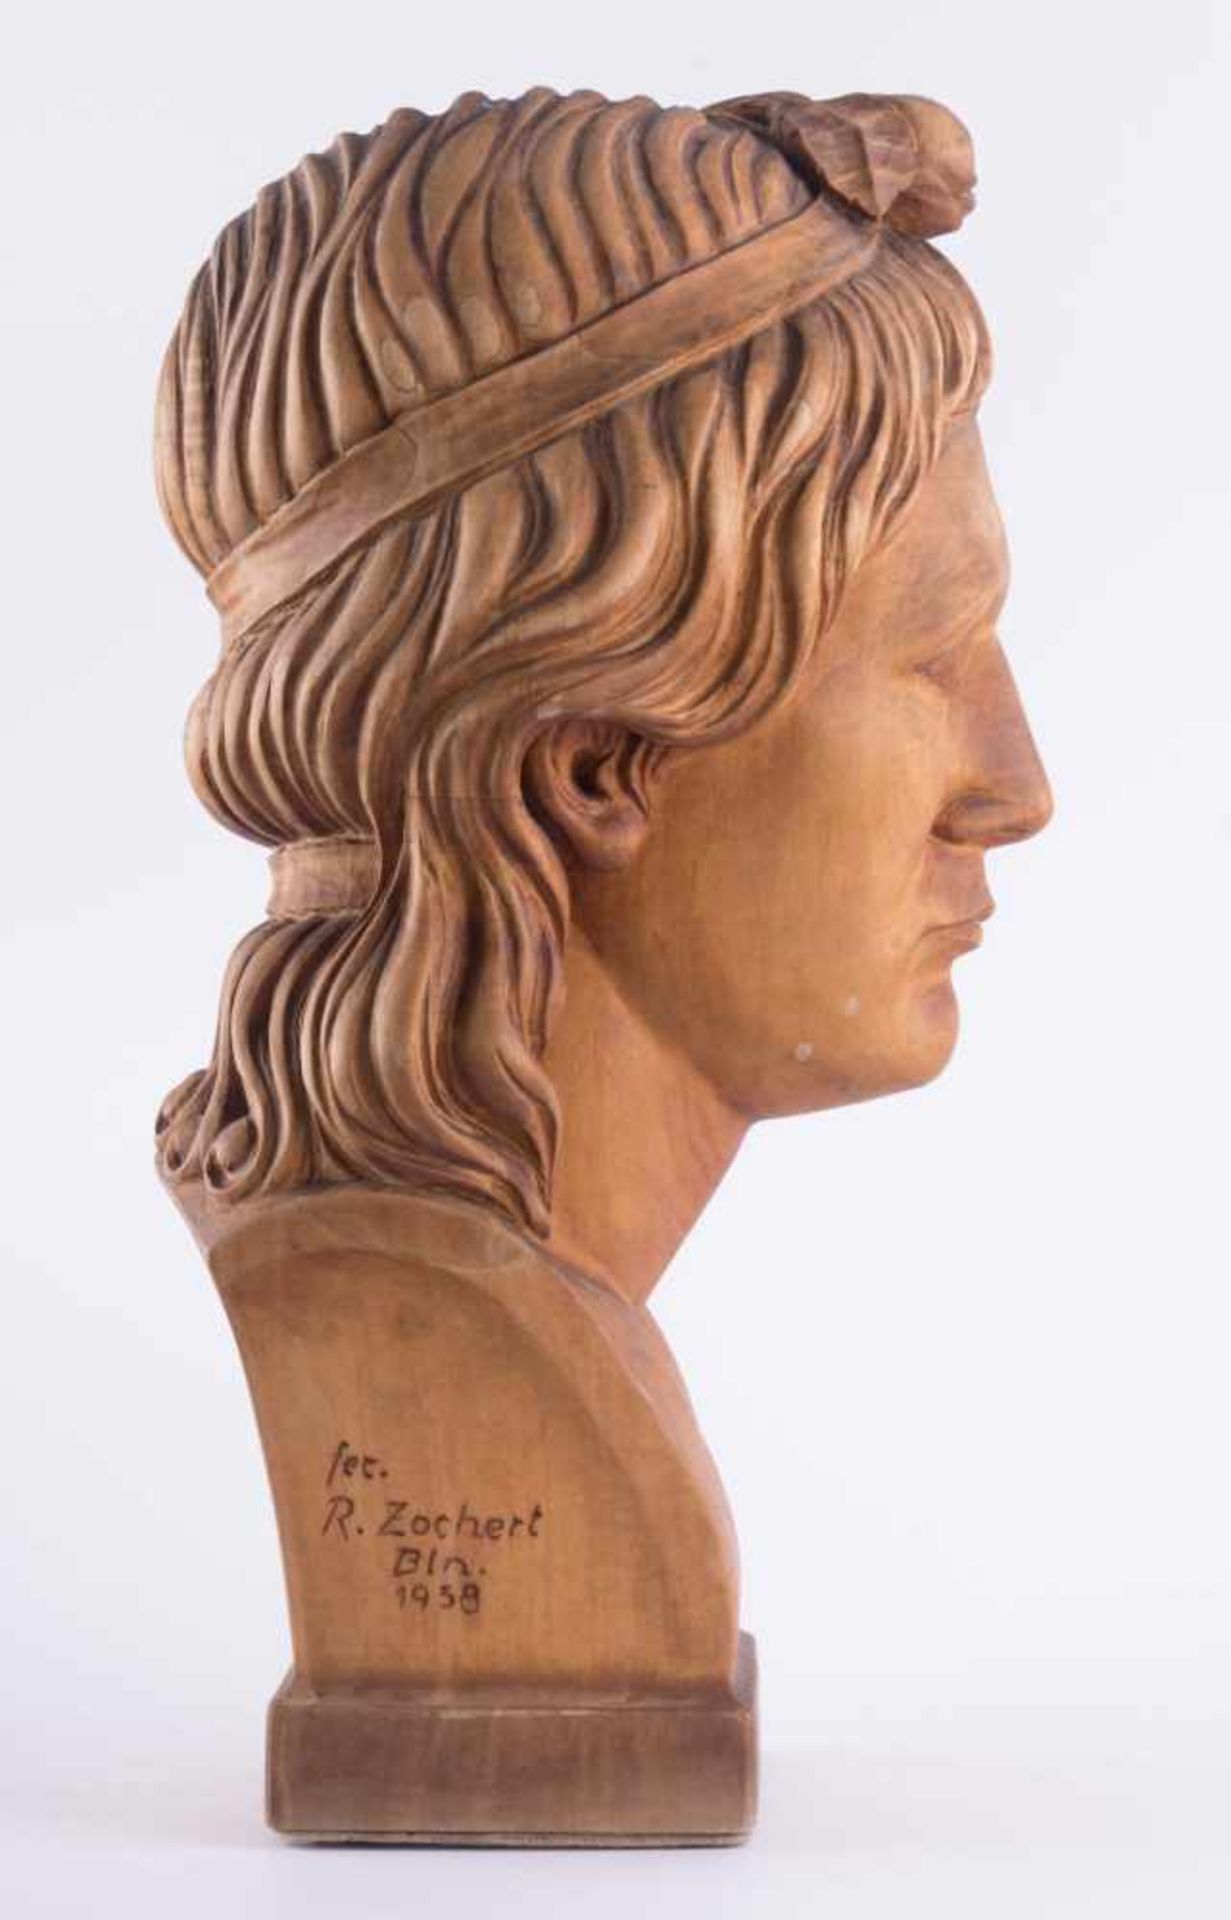 R. Zochert 20. Jhd. "Flora" Skulptur-Volumen, Holz, H: 41 cm, vorne bezeichnet, seitlich signiert - Image 2 of 3